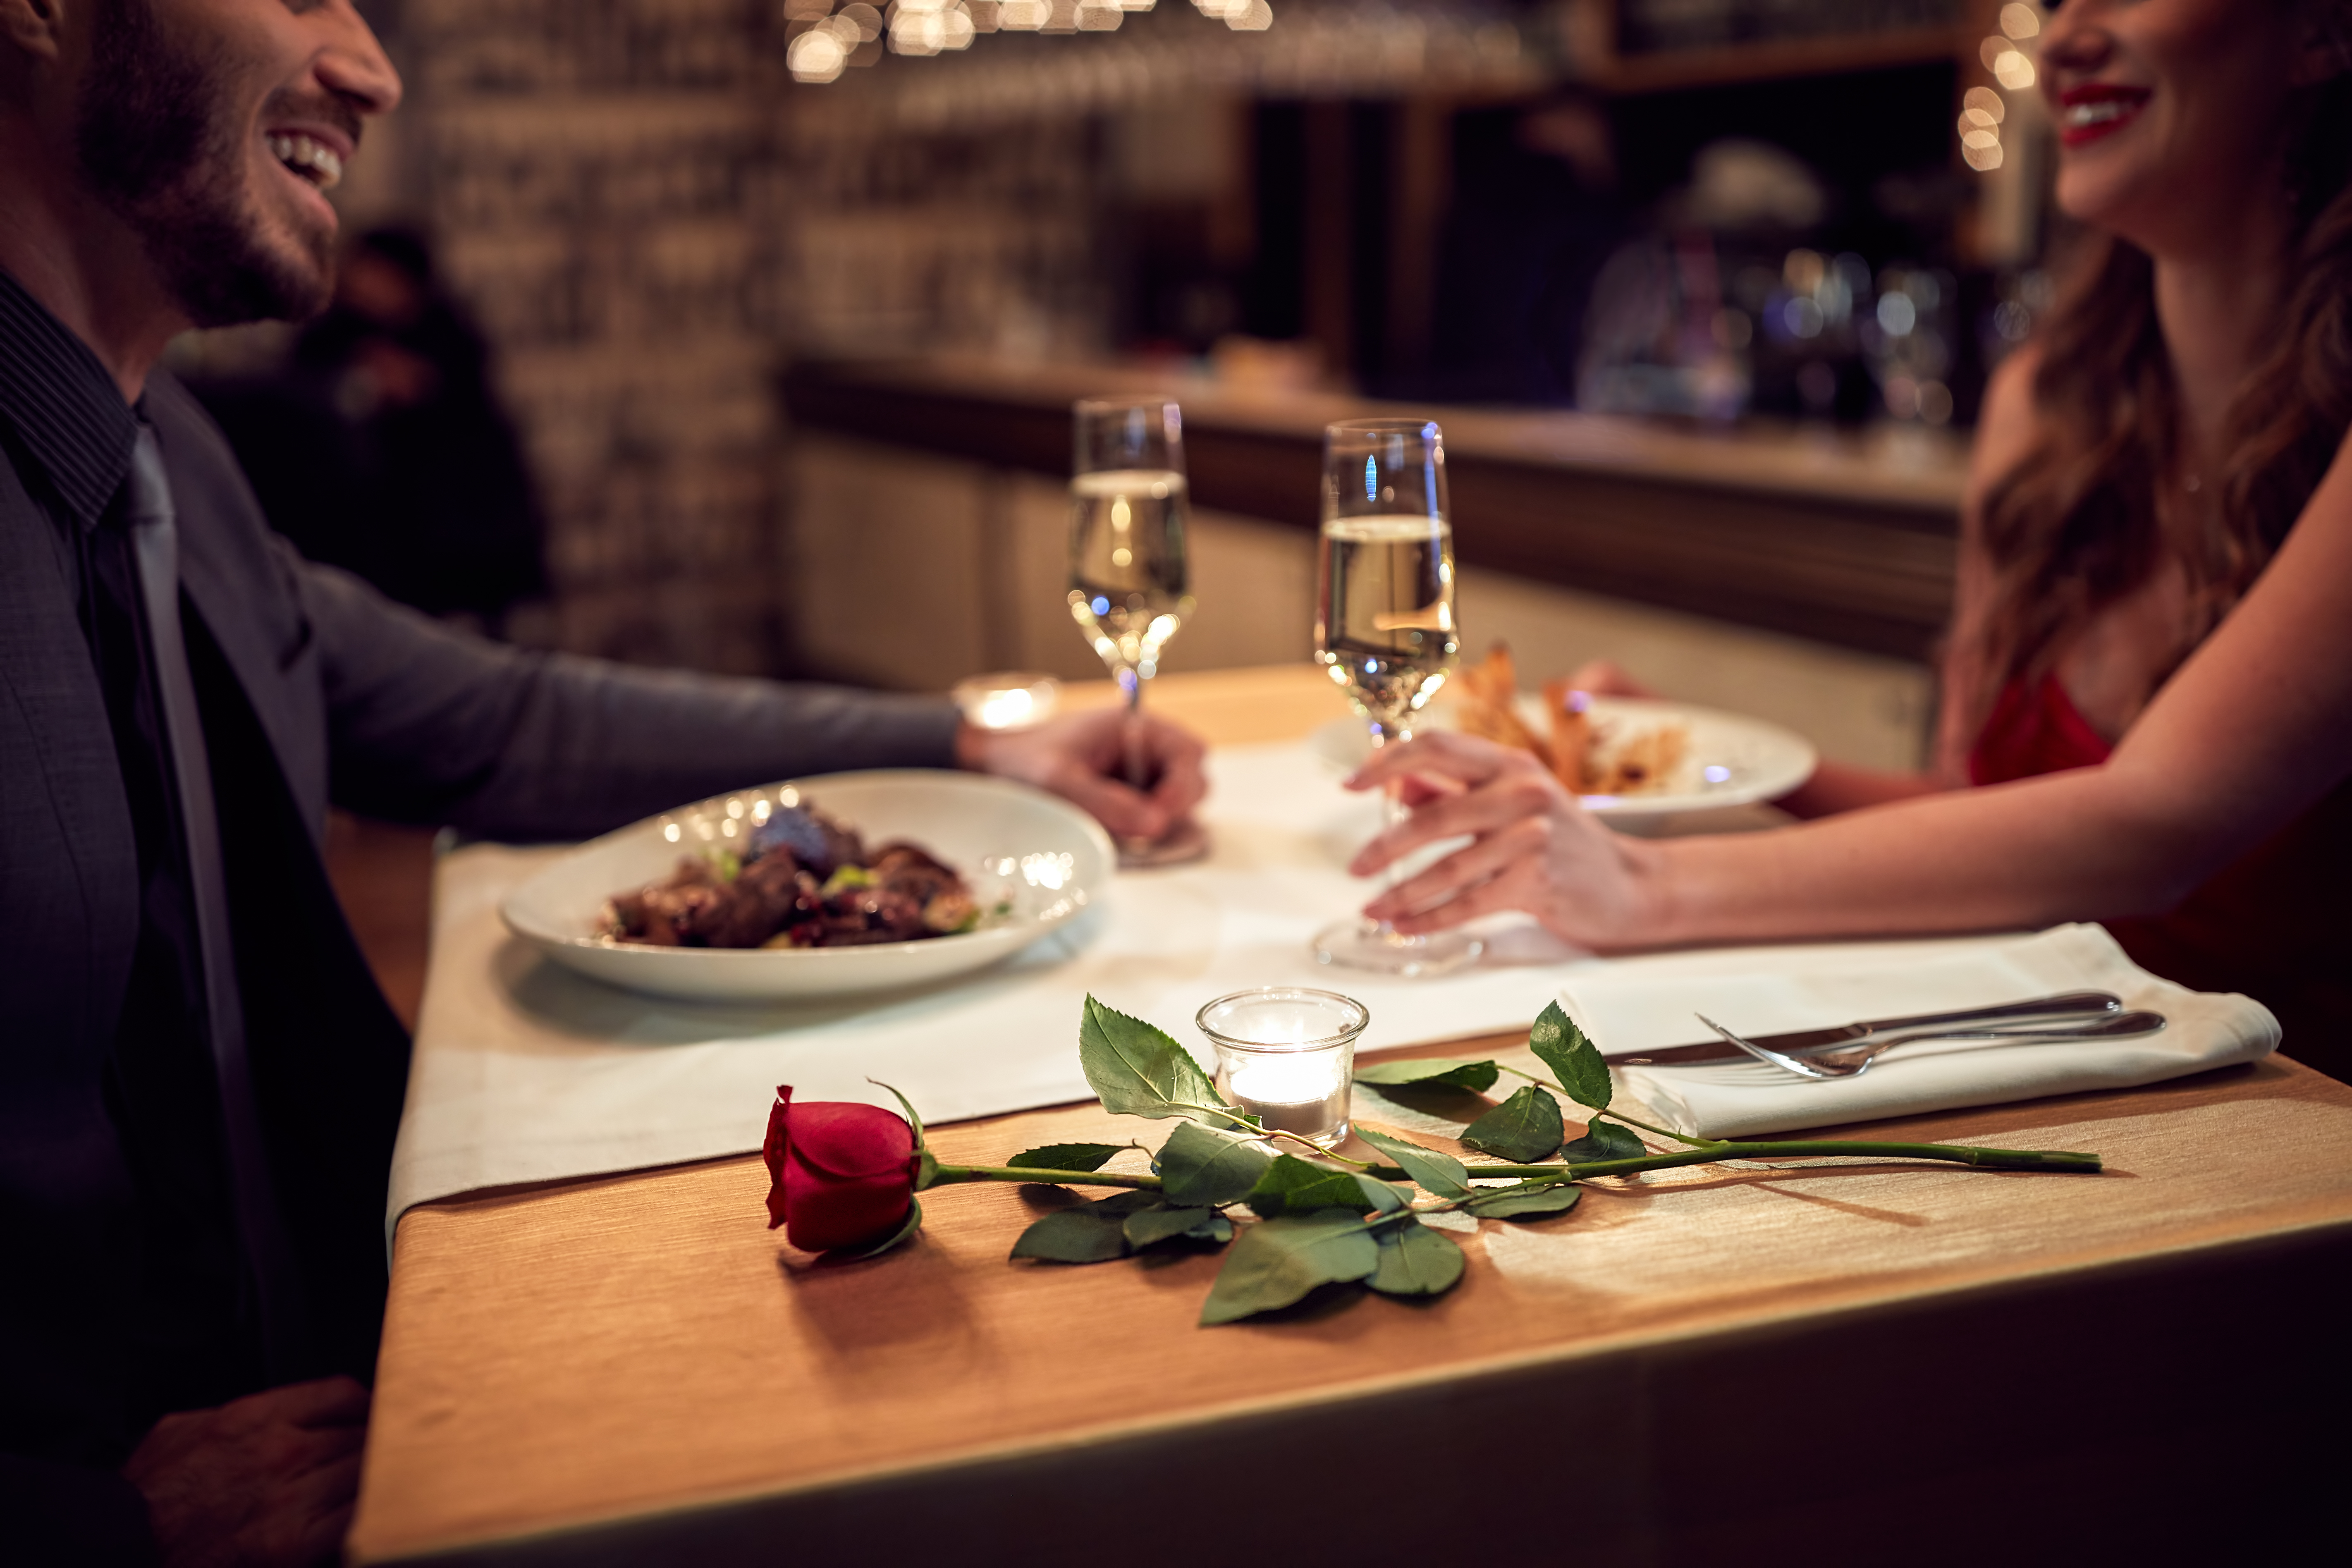 Una pareja disfrutando de una cena romántica | Foto: Shutterstock